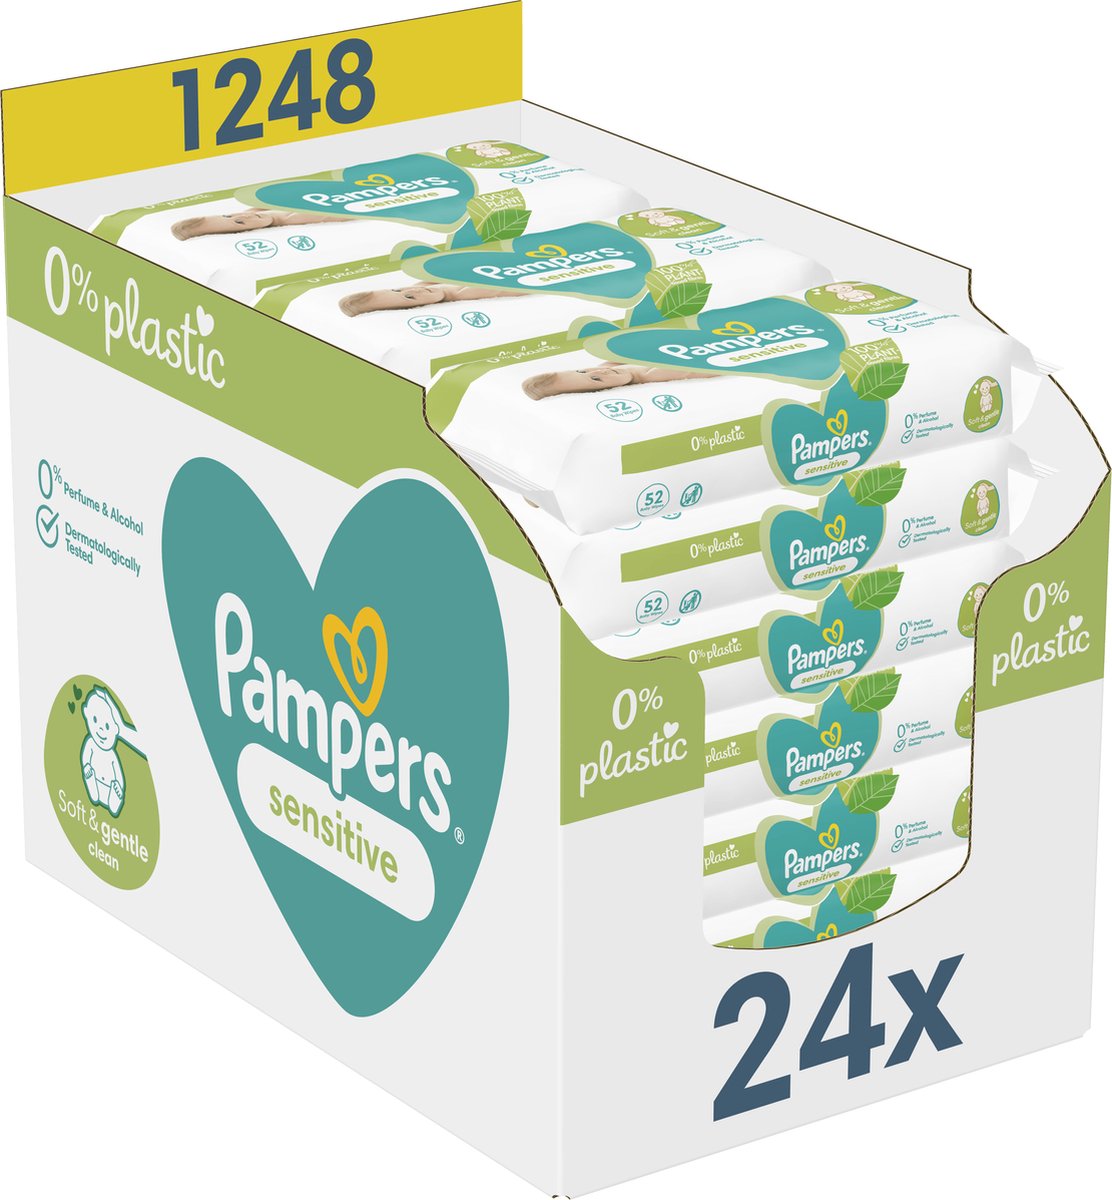 Pampers Sensitive 0% Plastic billendoekjes promoties!